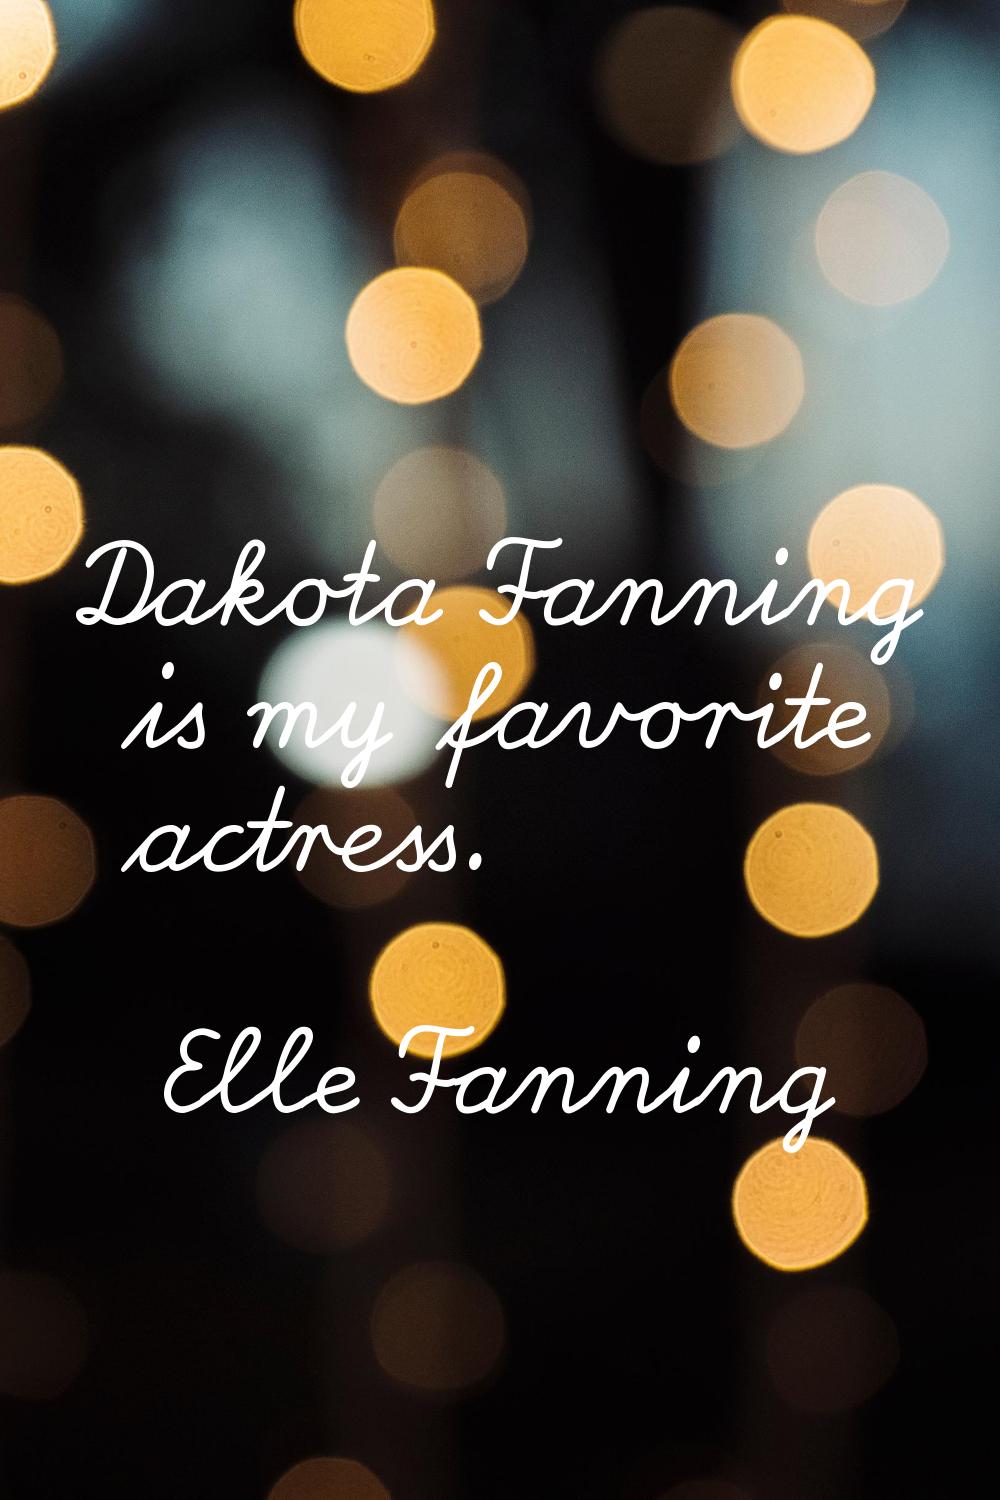 Dakota Fanning is my favorite actress.